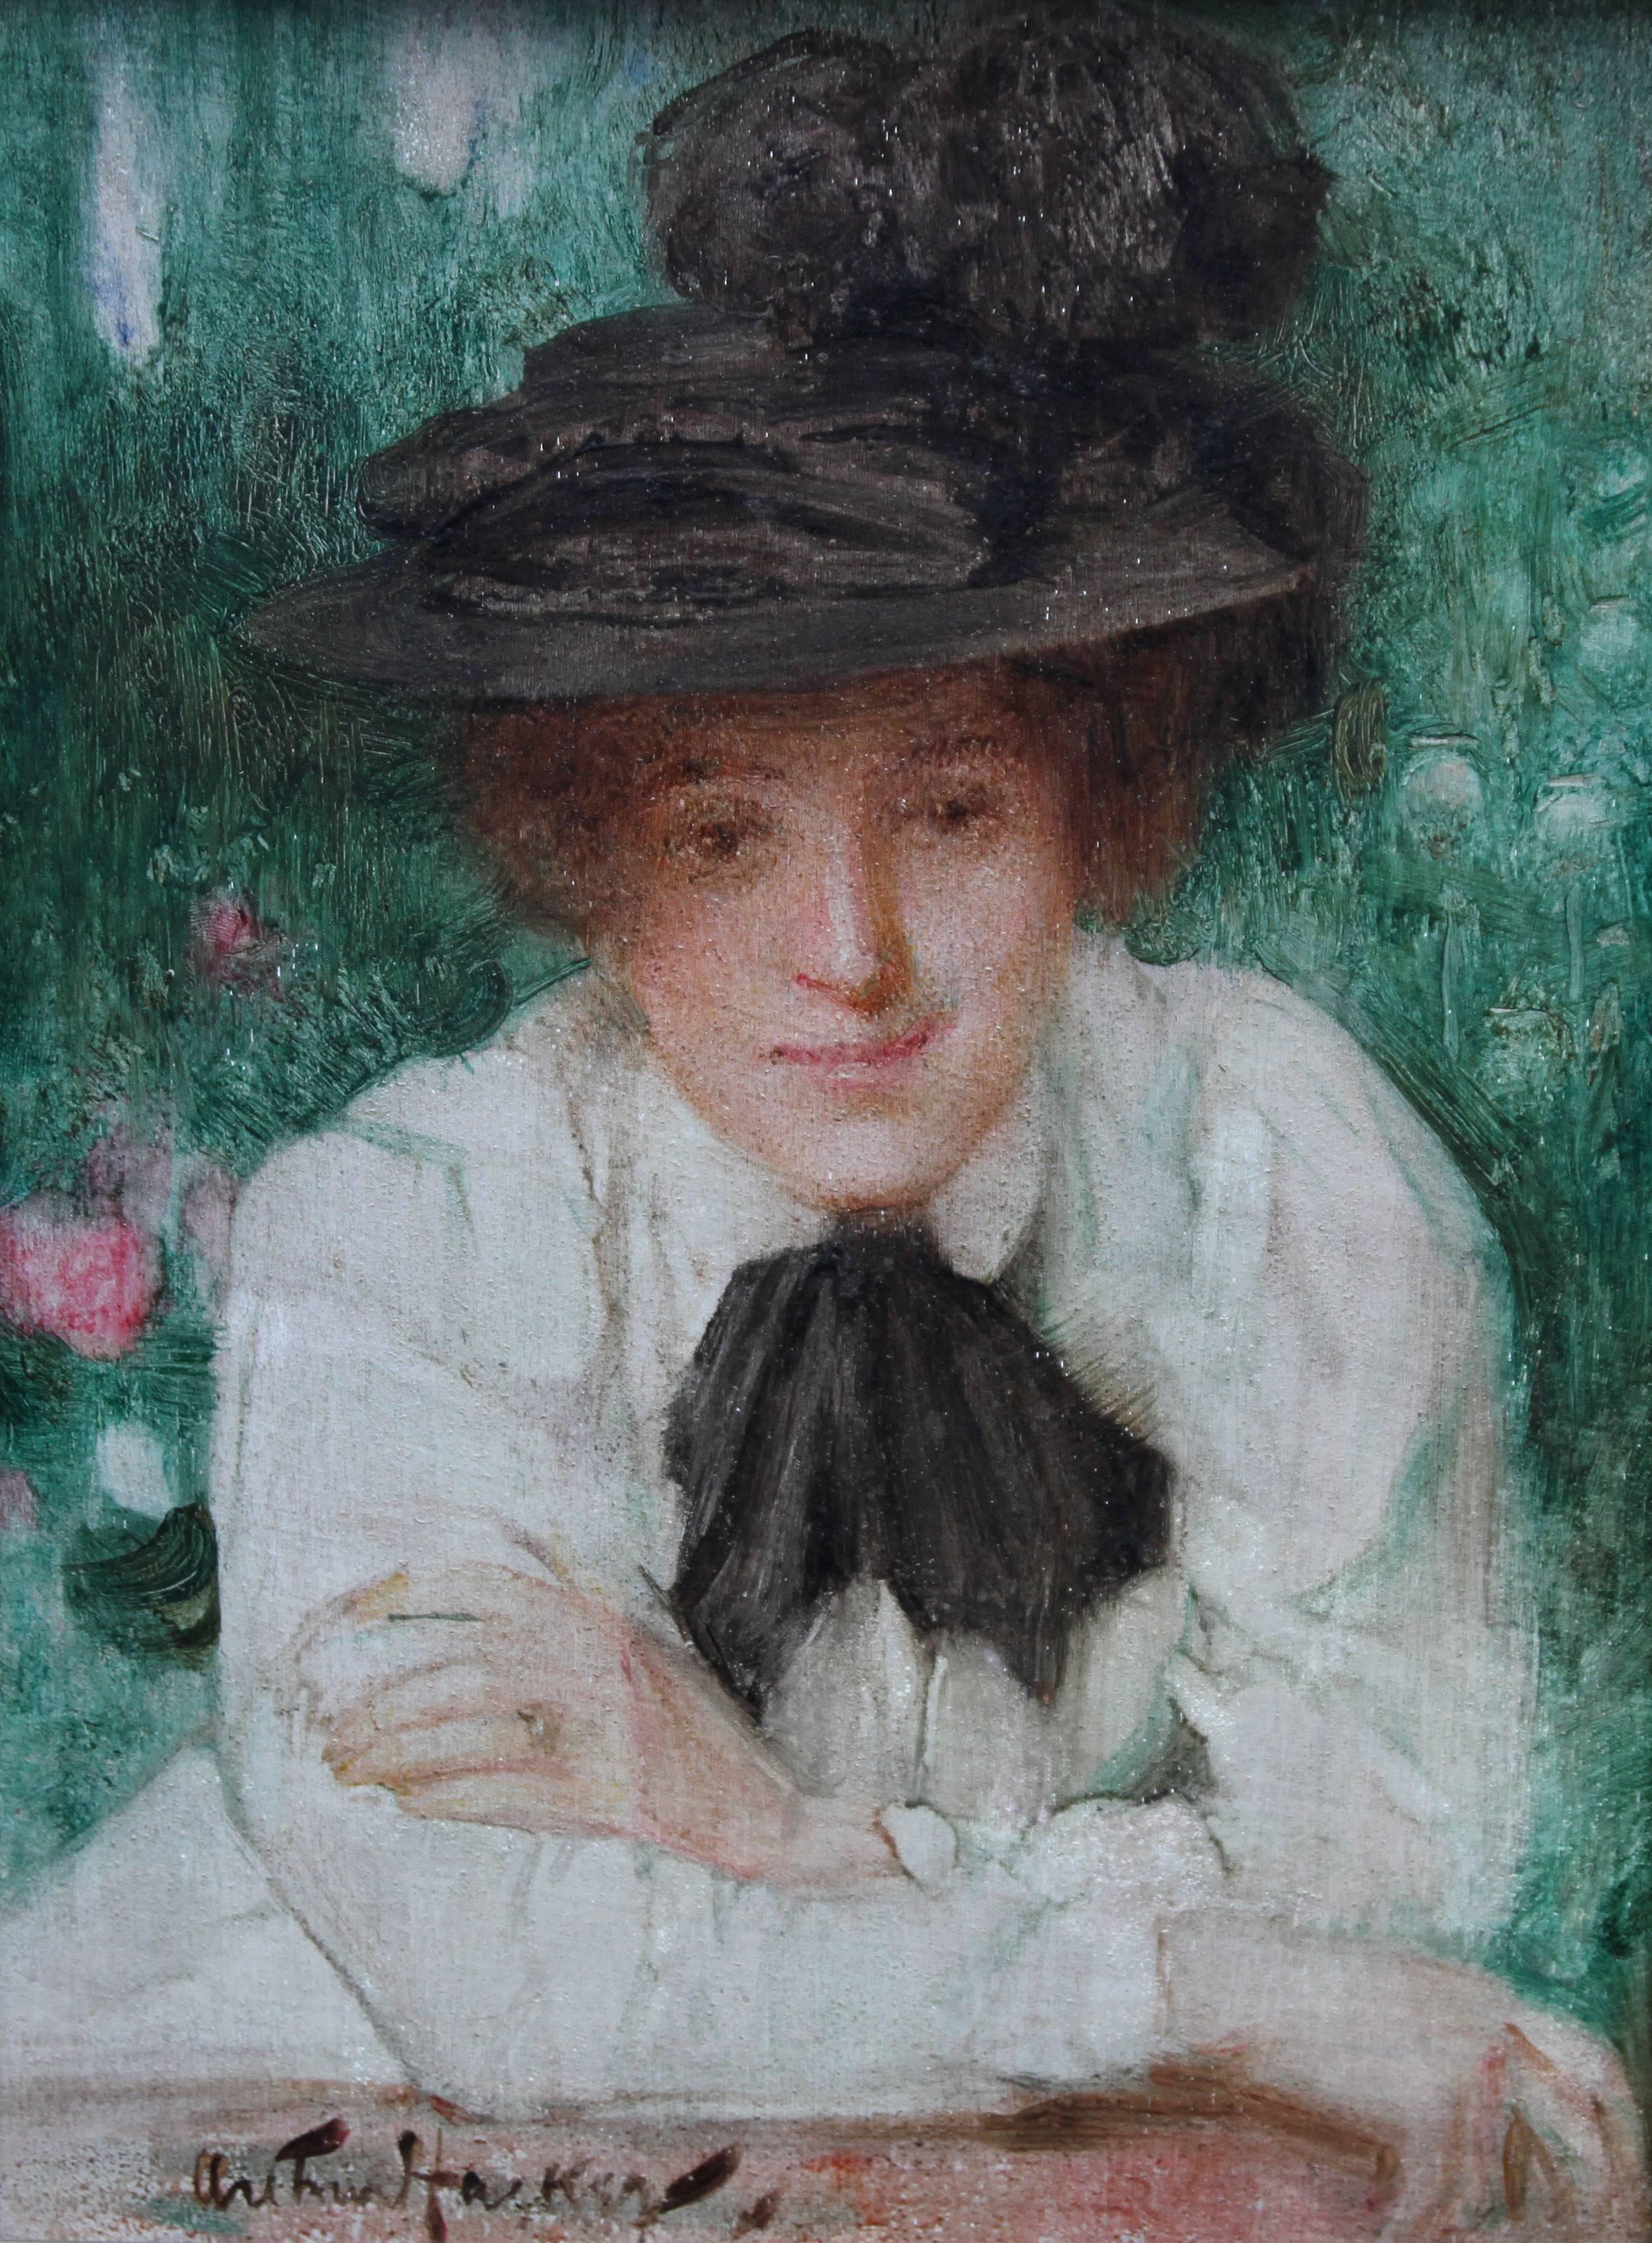 Porträt einer edwardianischen Dame – britisches impressionistisches Ölgemälde mit schwarzem Hut – Painting von Arthur Hacker